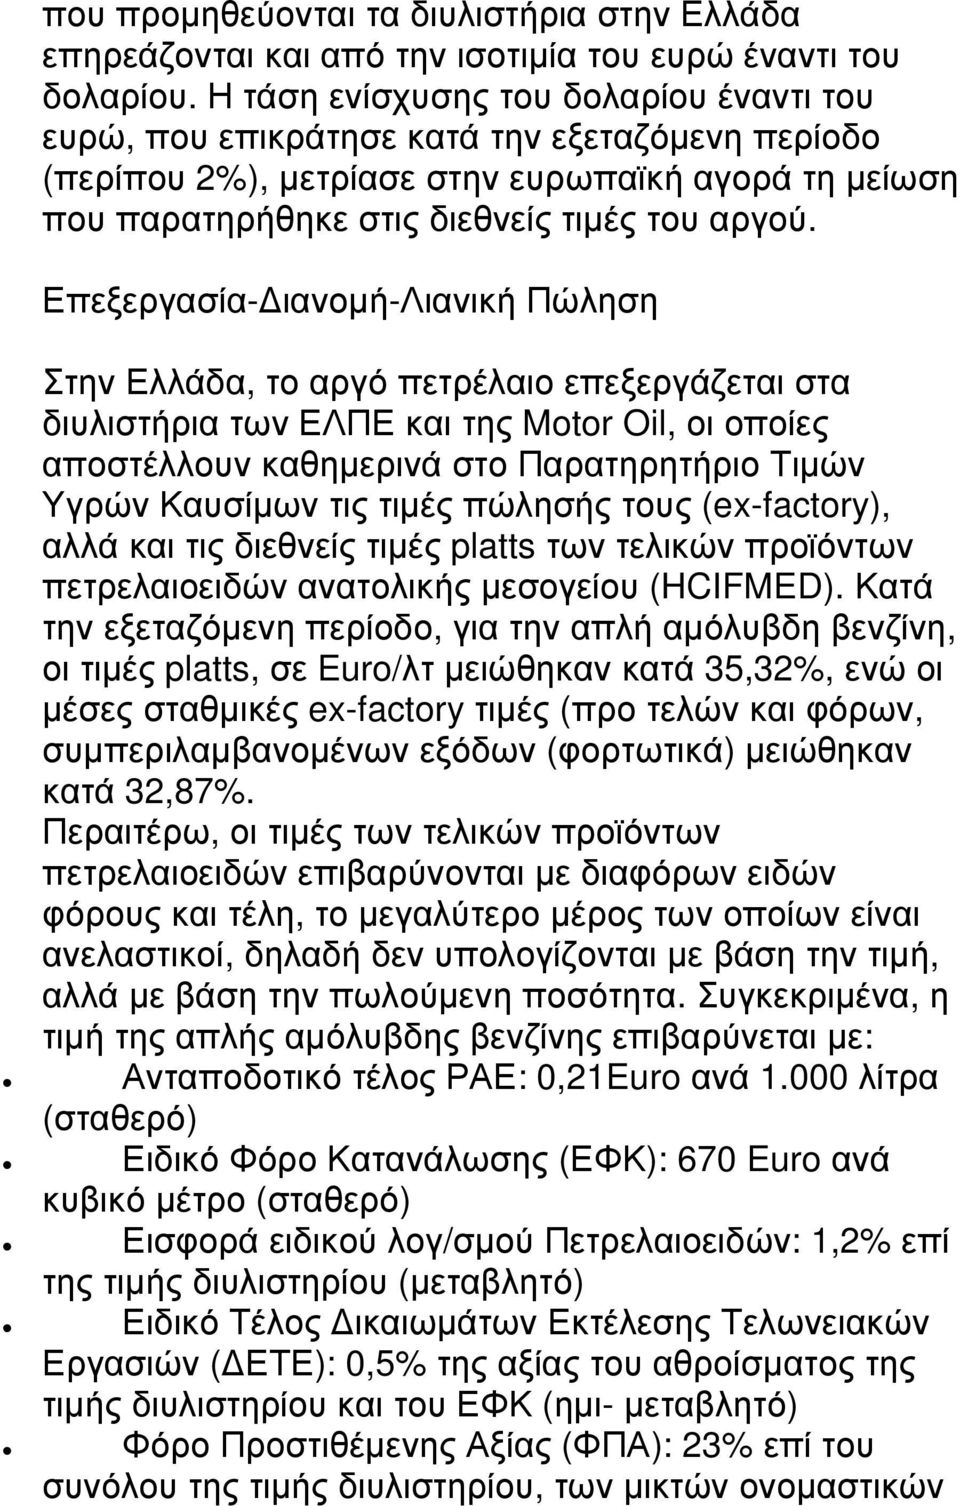 Επεξεργασία- ιανοµή-λιανική Πώληση Στην Ελλάδα, το αργό πετρέλαιο επεξεργάζεται στα διυλιστήρια των ΕΛΠΕ και της Motor Oil, οι οποίες αποστέλλουν καθηµερινά στο Παρατηρητήριο Τιµών Υγρών Καυσίµων τις